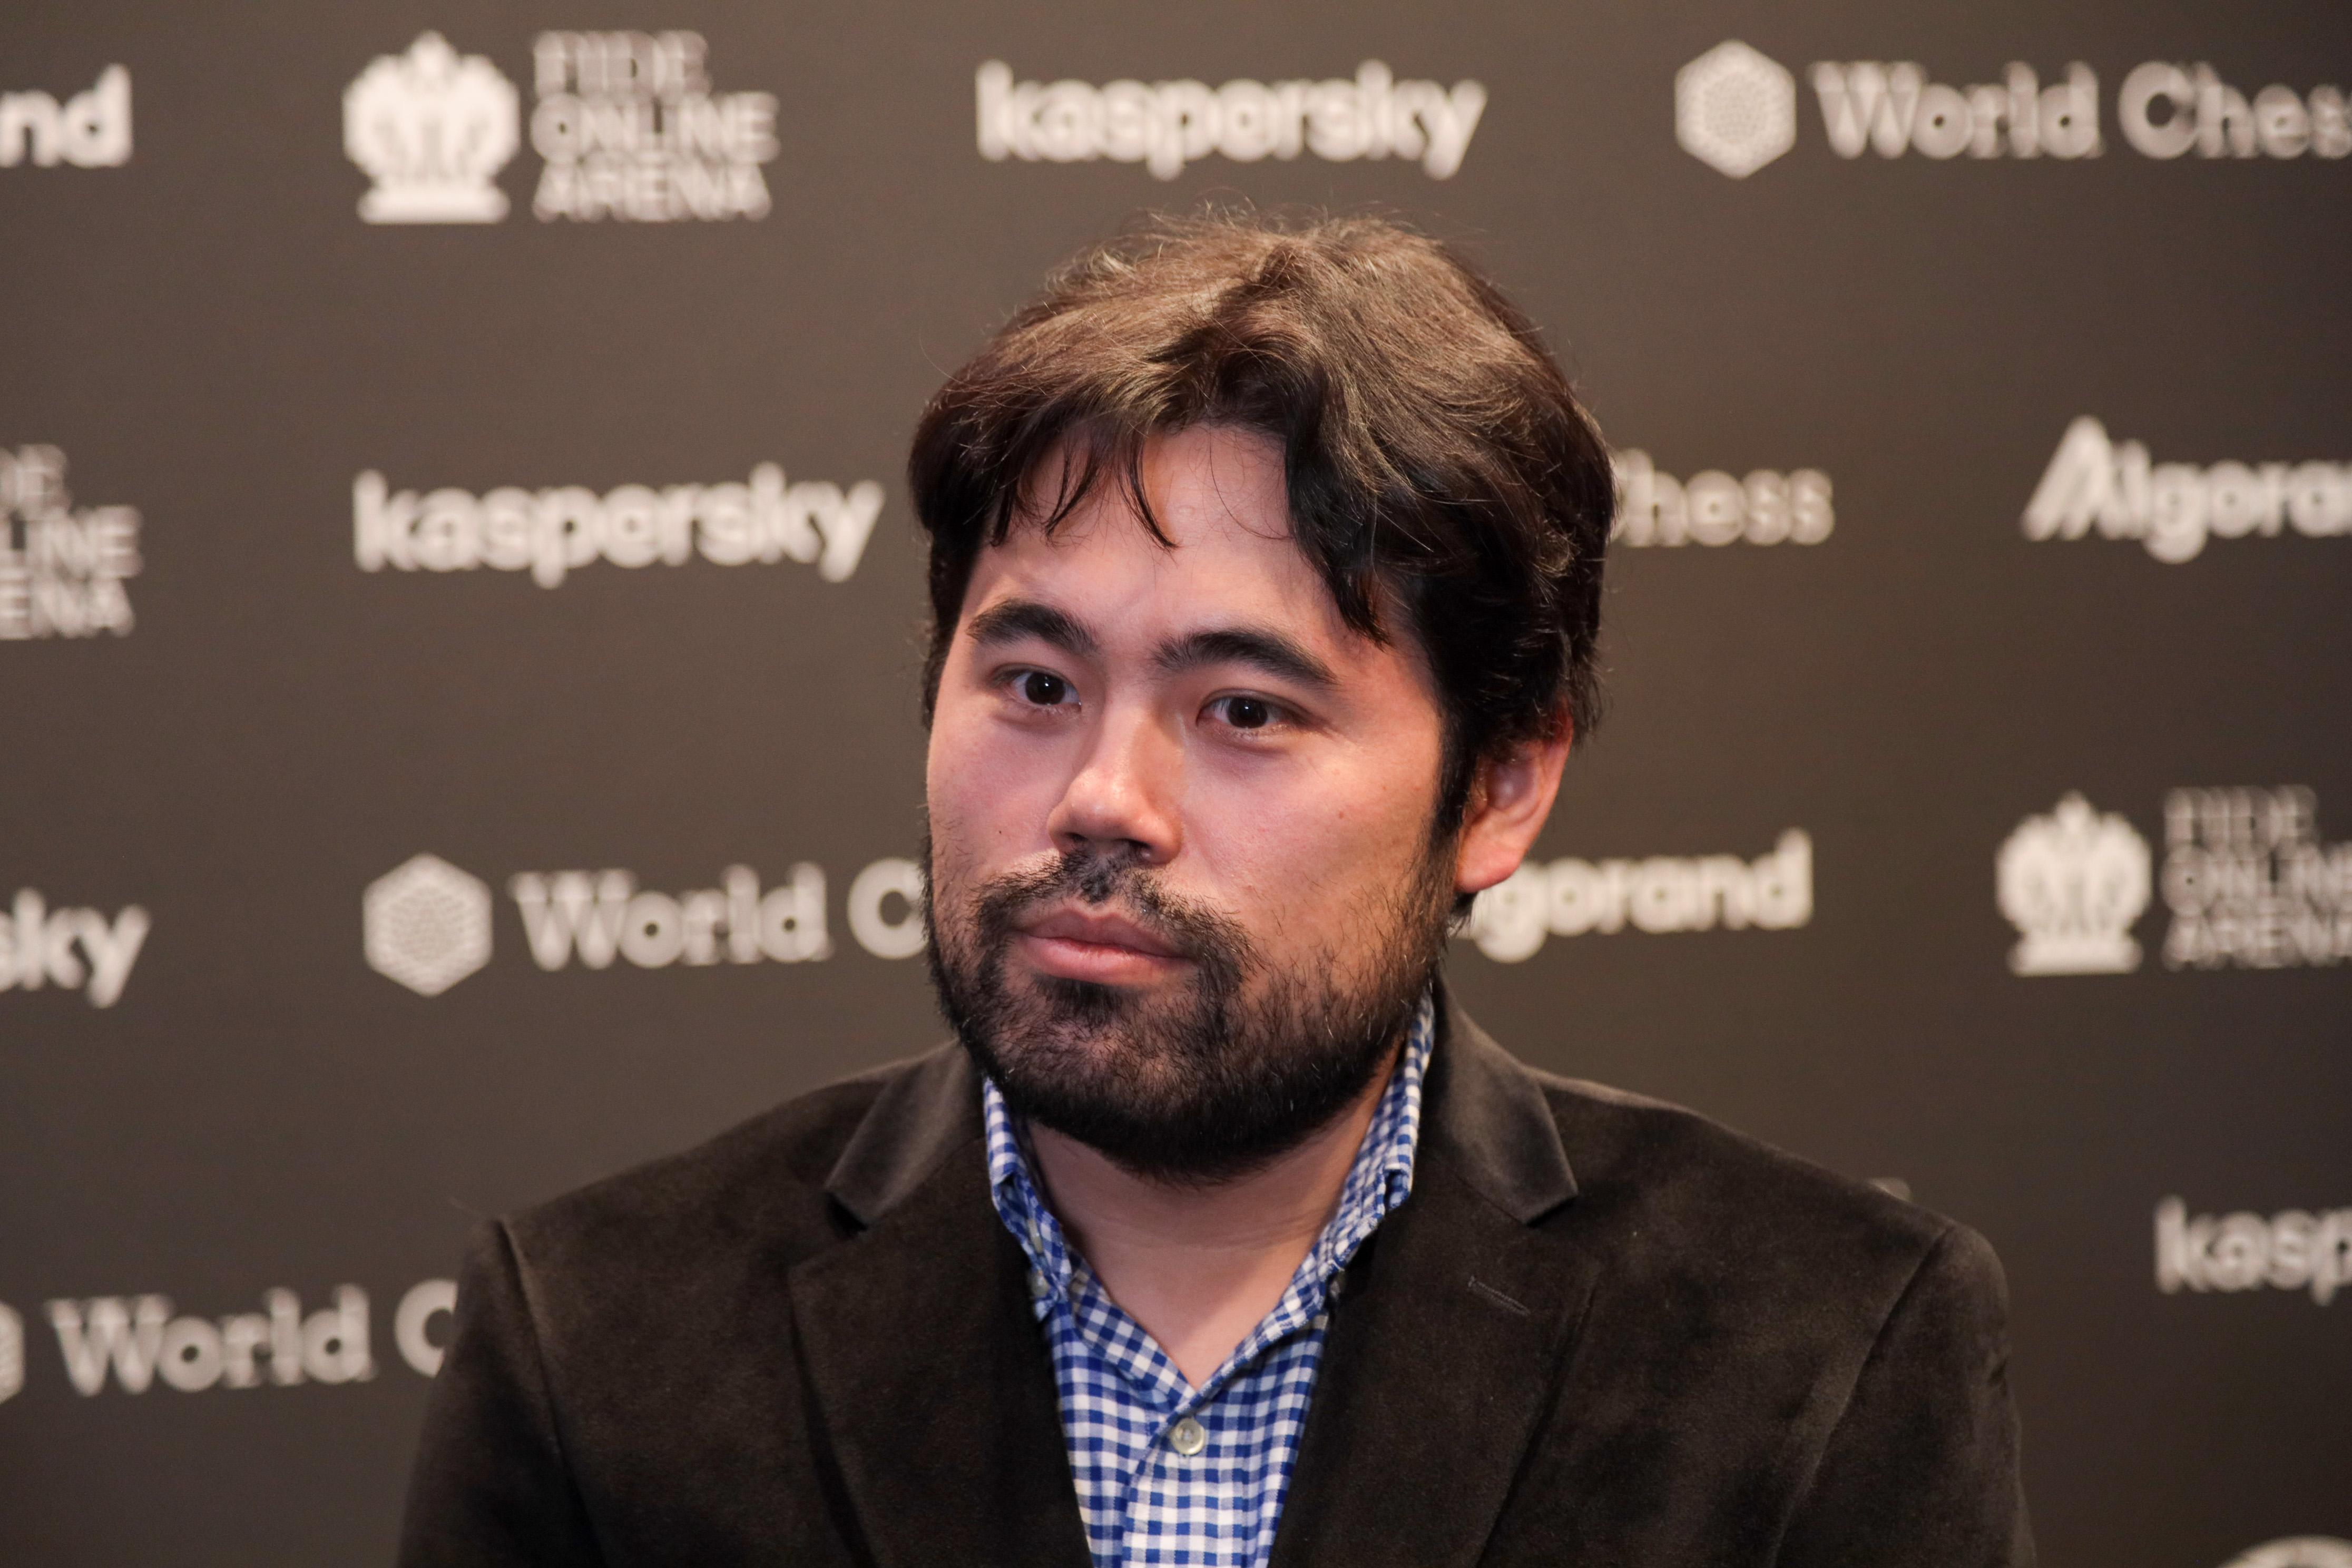 2022 FIDE Grand Prix Berlin Final: Nakamura Wins First Leg After 2-0  Tiebreak Sweep 